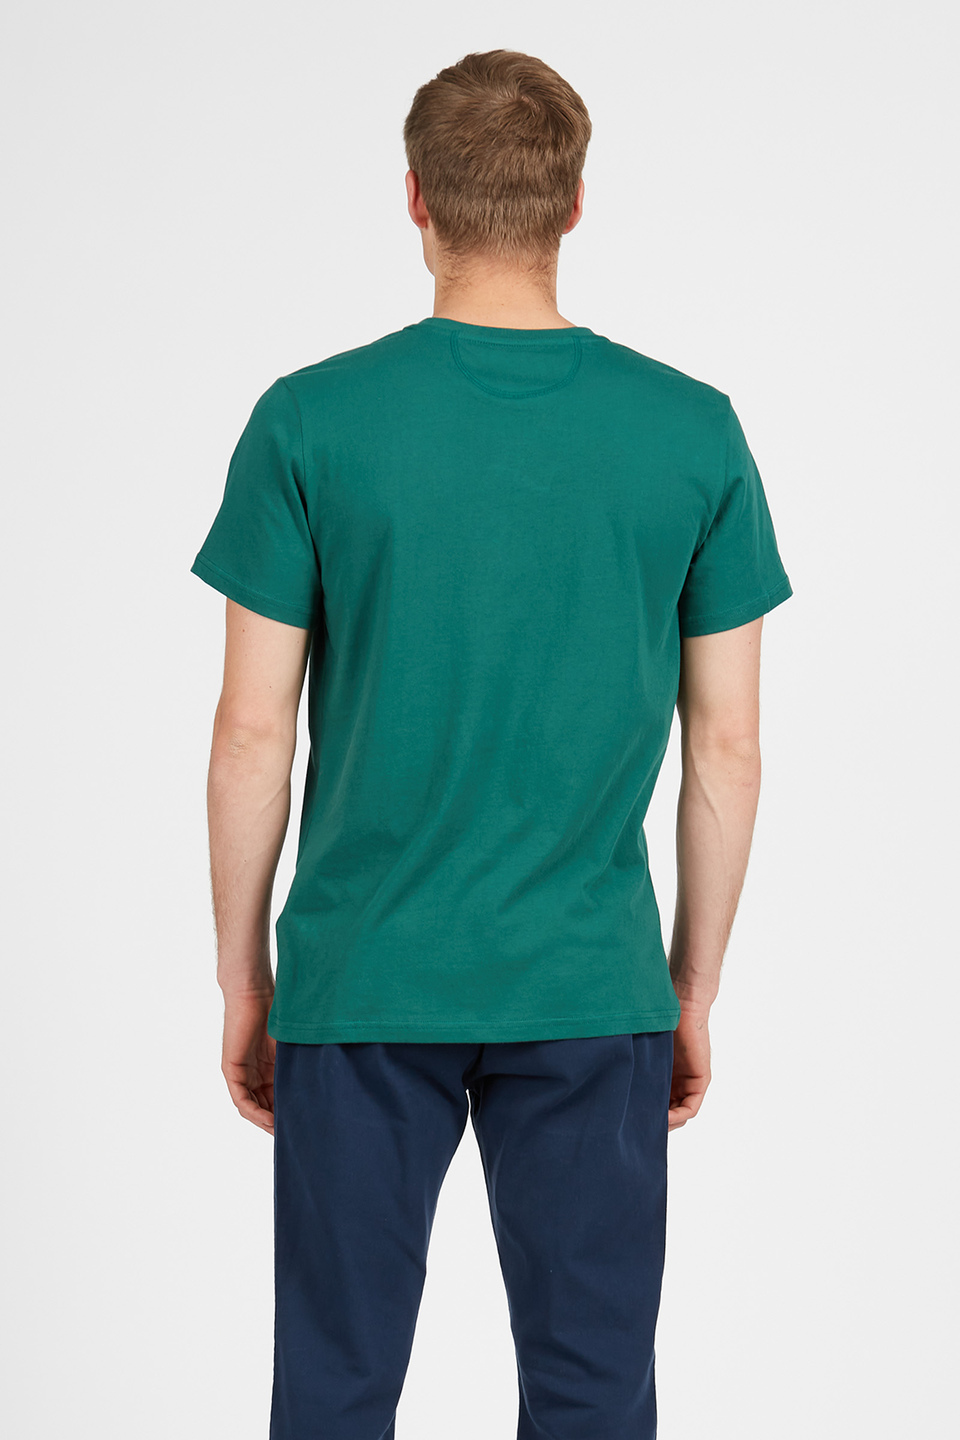 Kurzärmeliges T-Shirt Herren Rundhals Regular Fit | La Martina - Official Online Shop